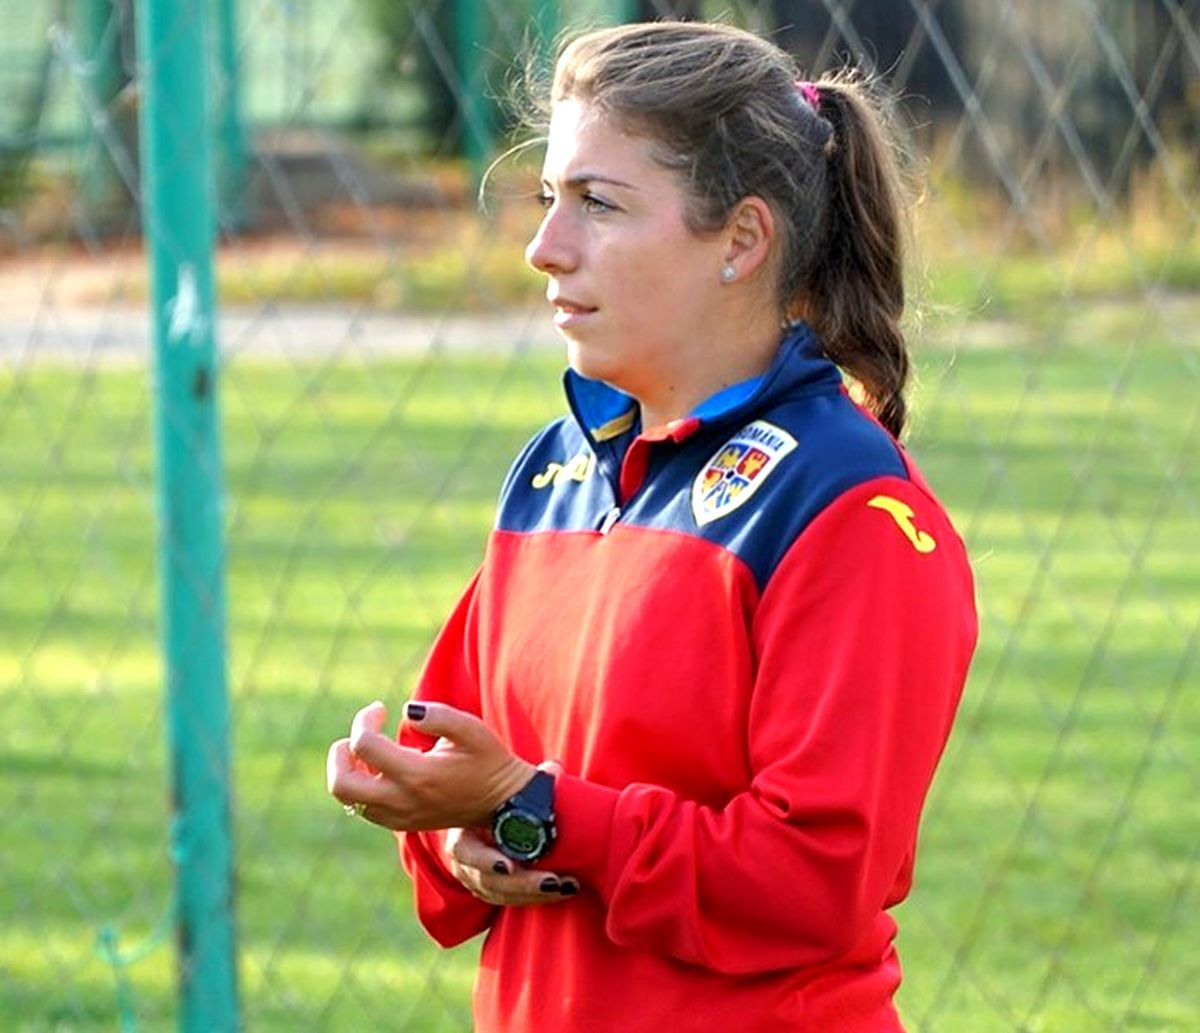 Povestea Irinei Giurgiu, prima femeie din România cu licență UEFA Pro